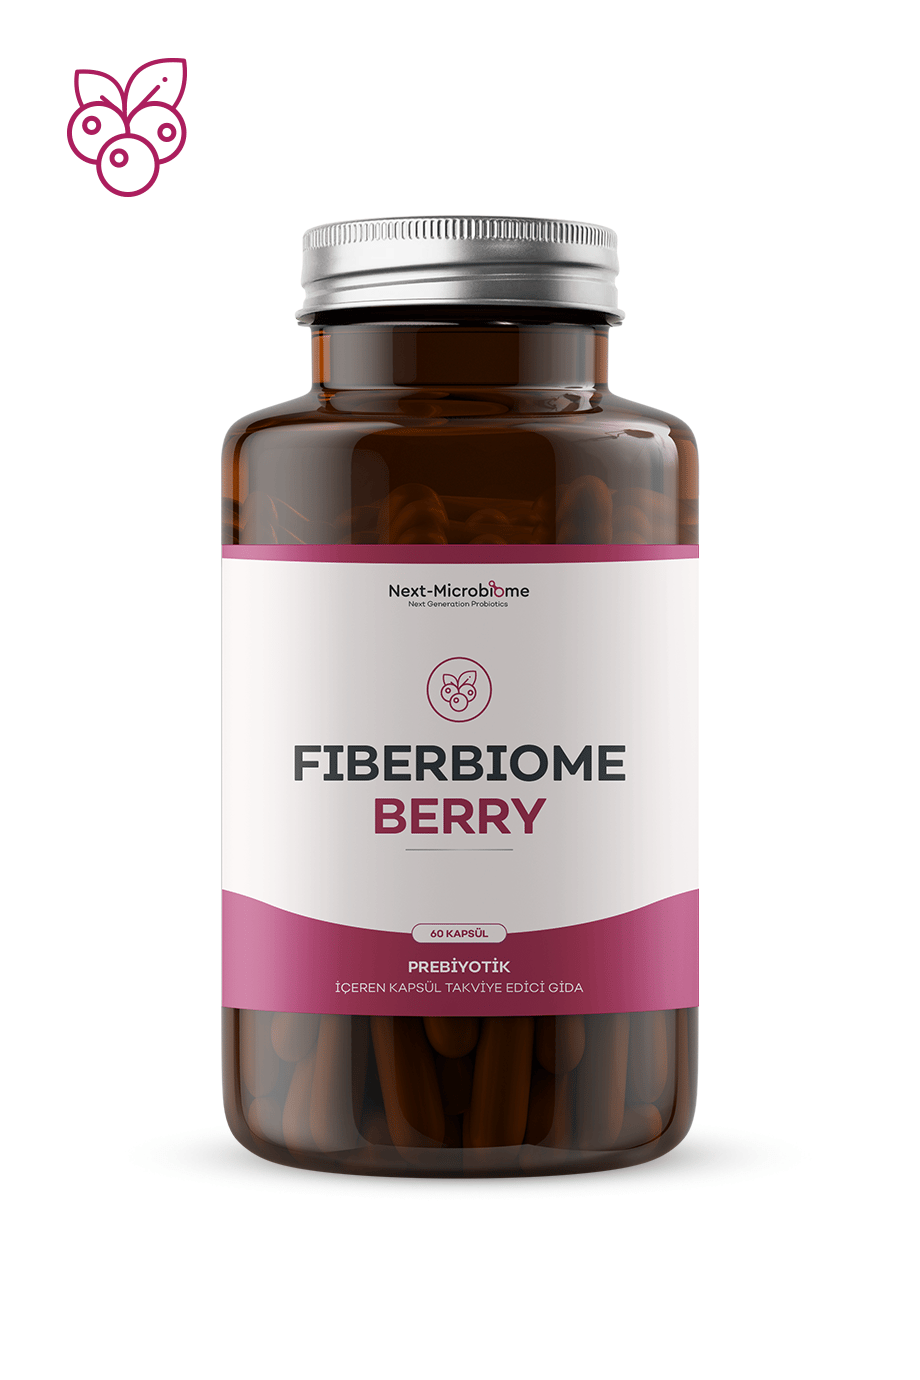 Fiberbiome-Berry